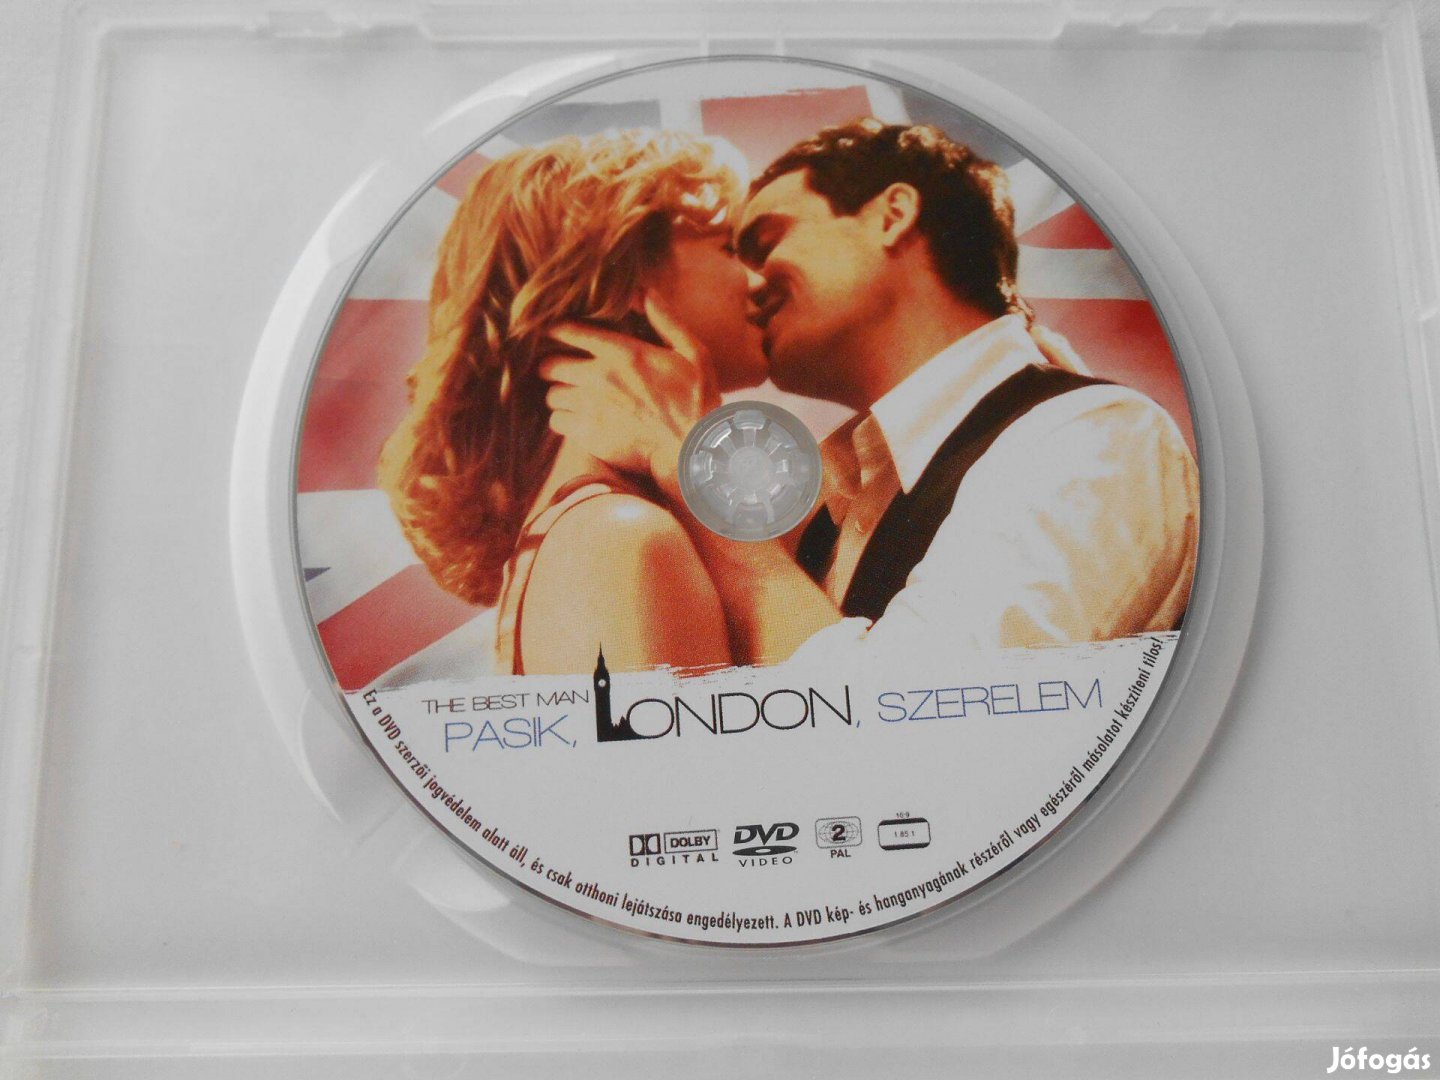 Stefan Schwartz: Pasik, London, szerelem (DVD)